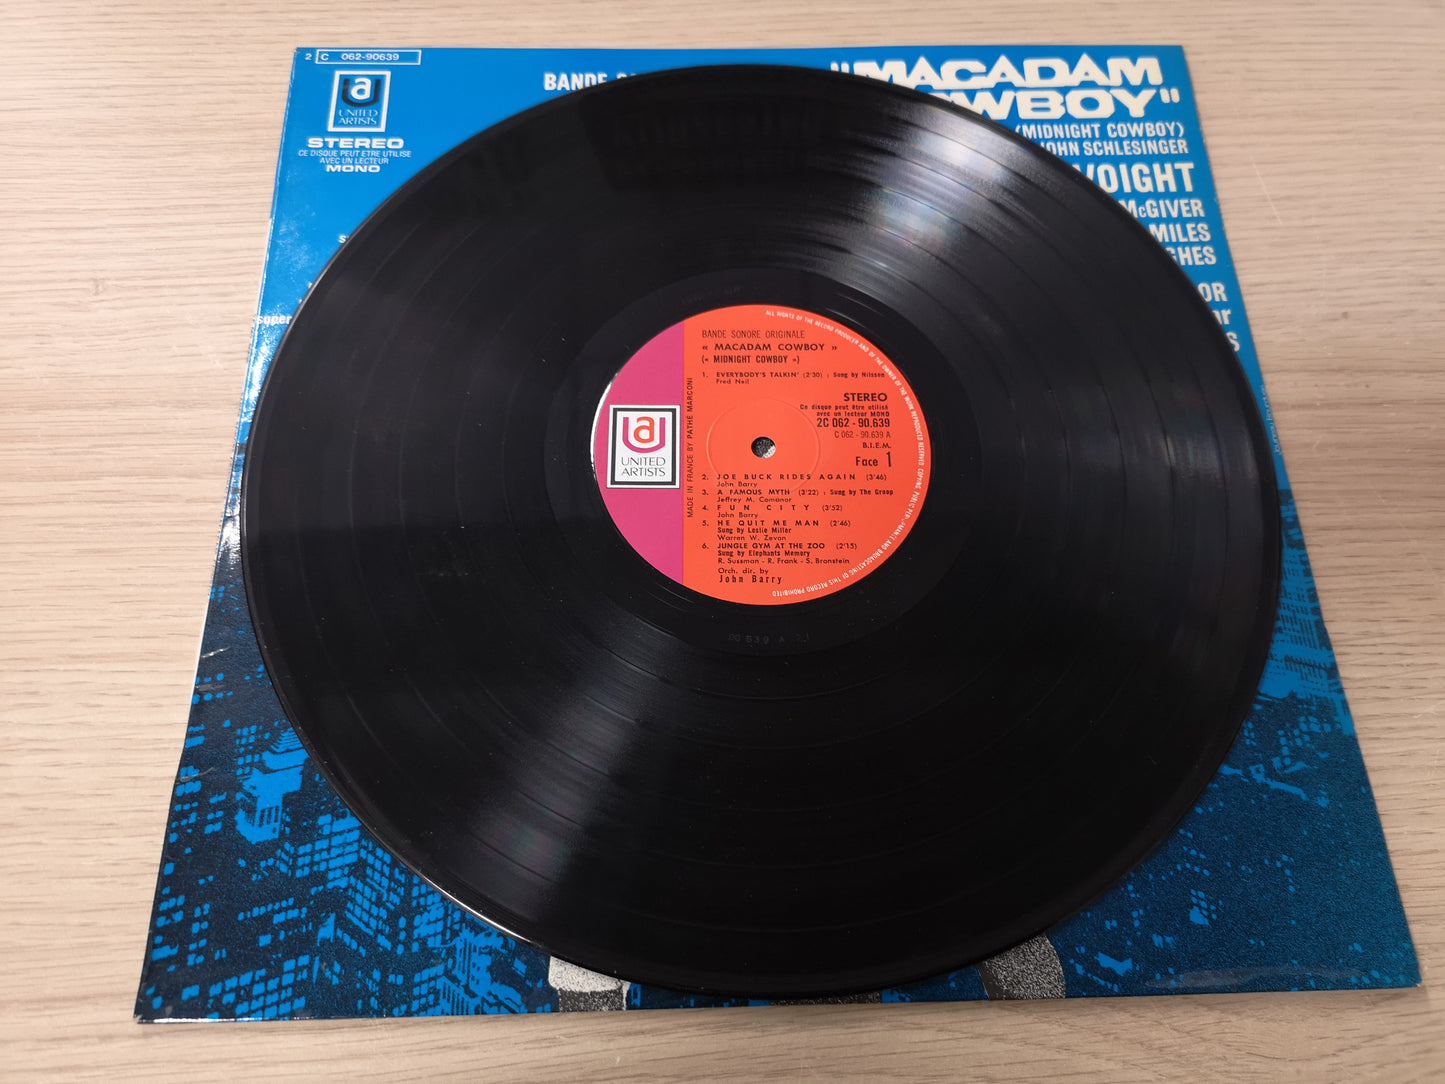 Soundtrack "Macadam Cowboy" Orig France 1969 EX/EX Nilsson